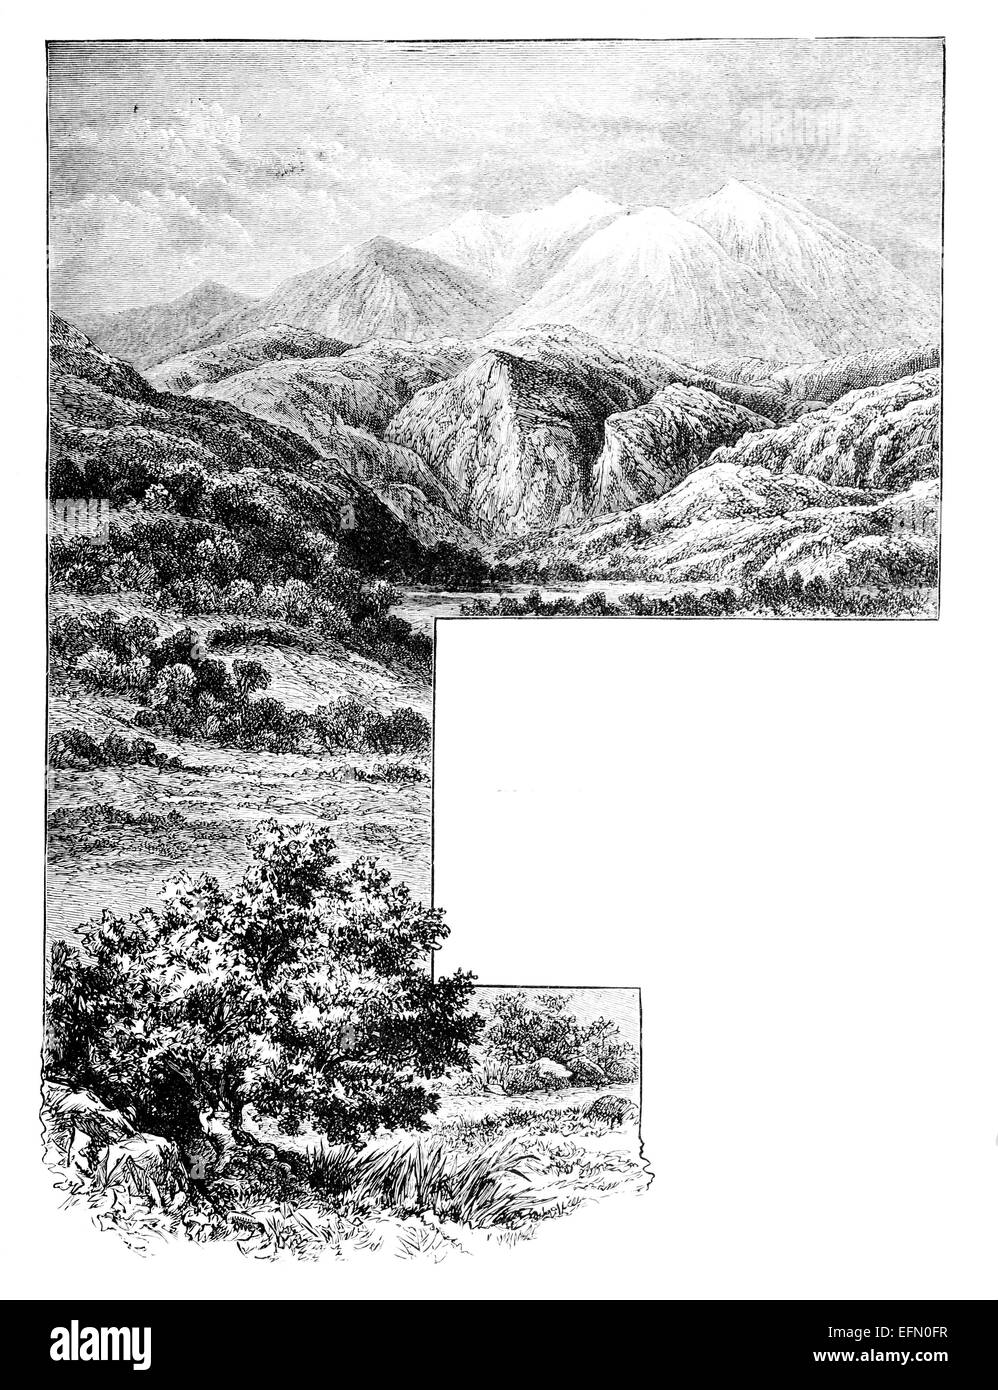 19ème siècle gravure victorienne d'un paysage de montagne grecque Banque D'Images